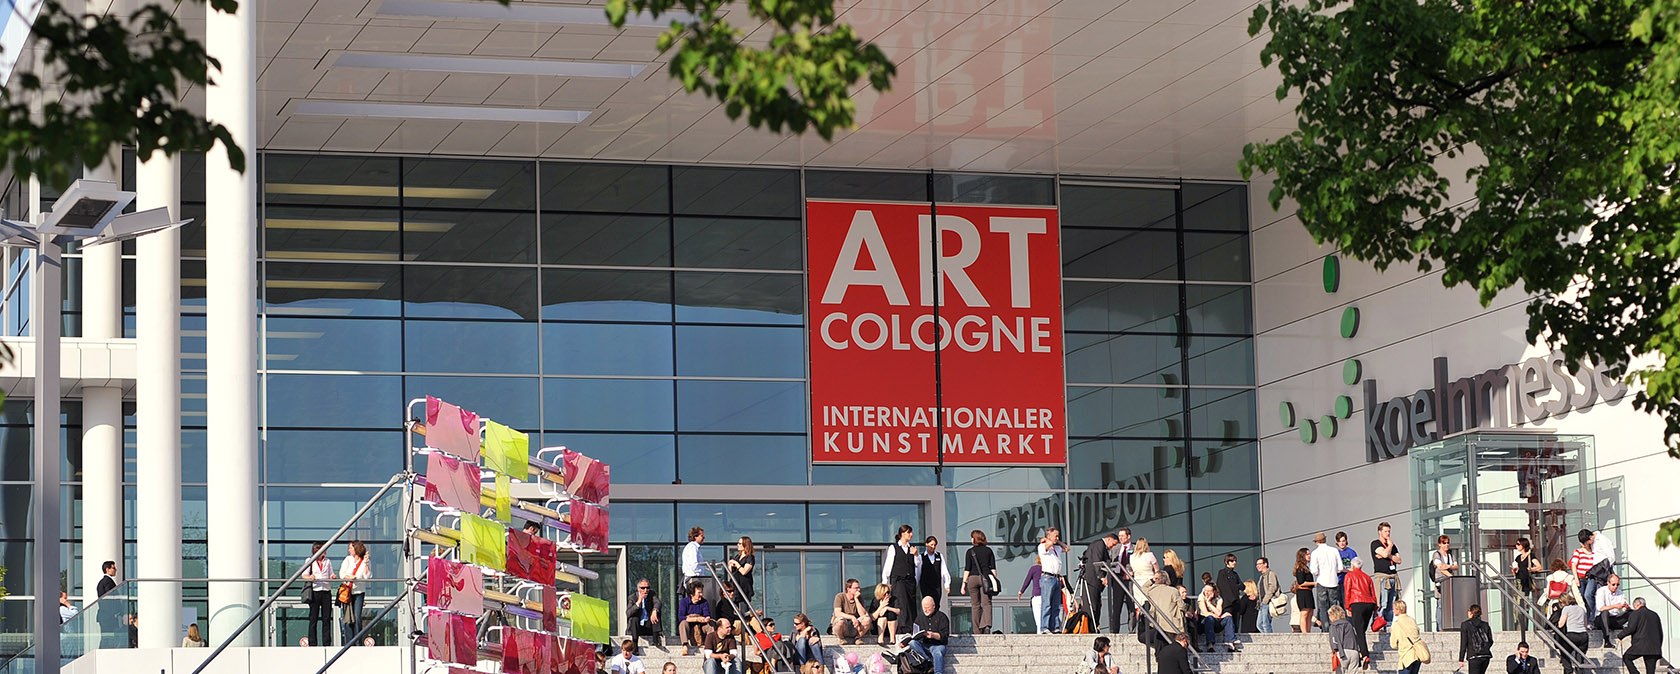 Die Kunstmesse Art Cologne lockt zahlreiche Besucher an, © Koelnmesse GmbH